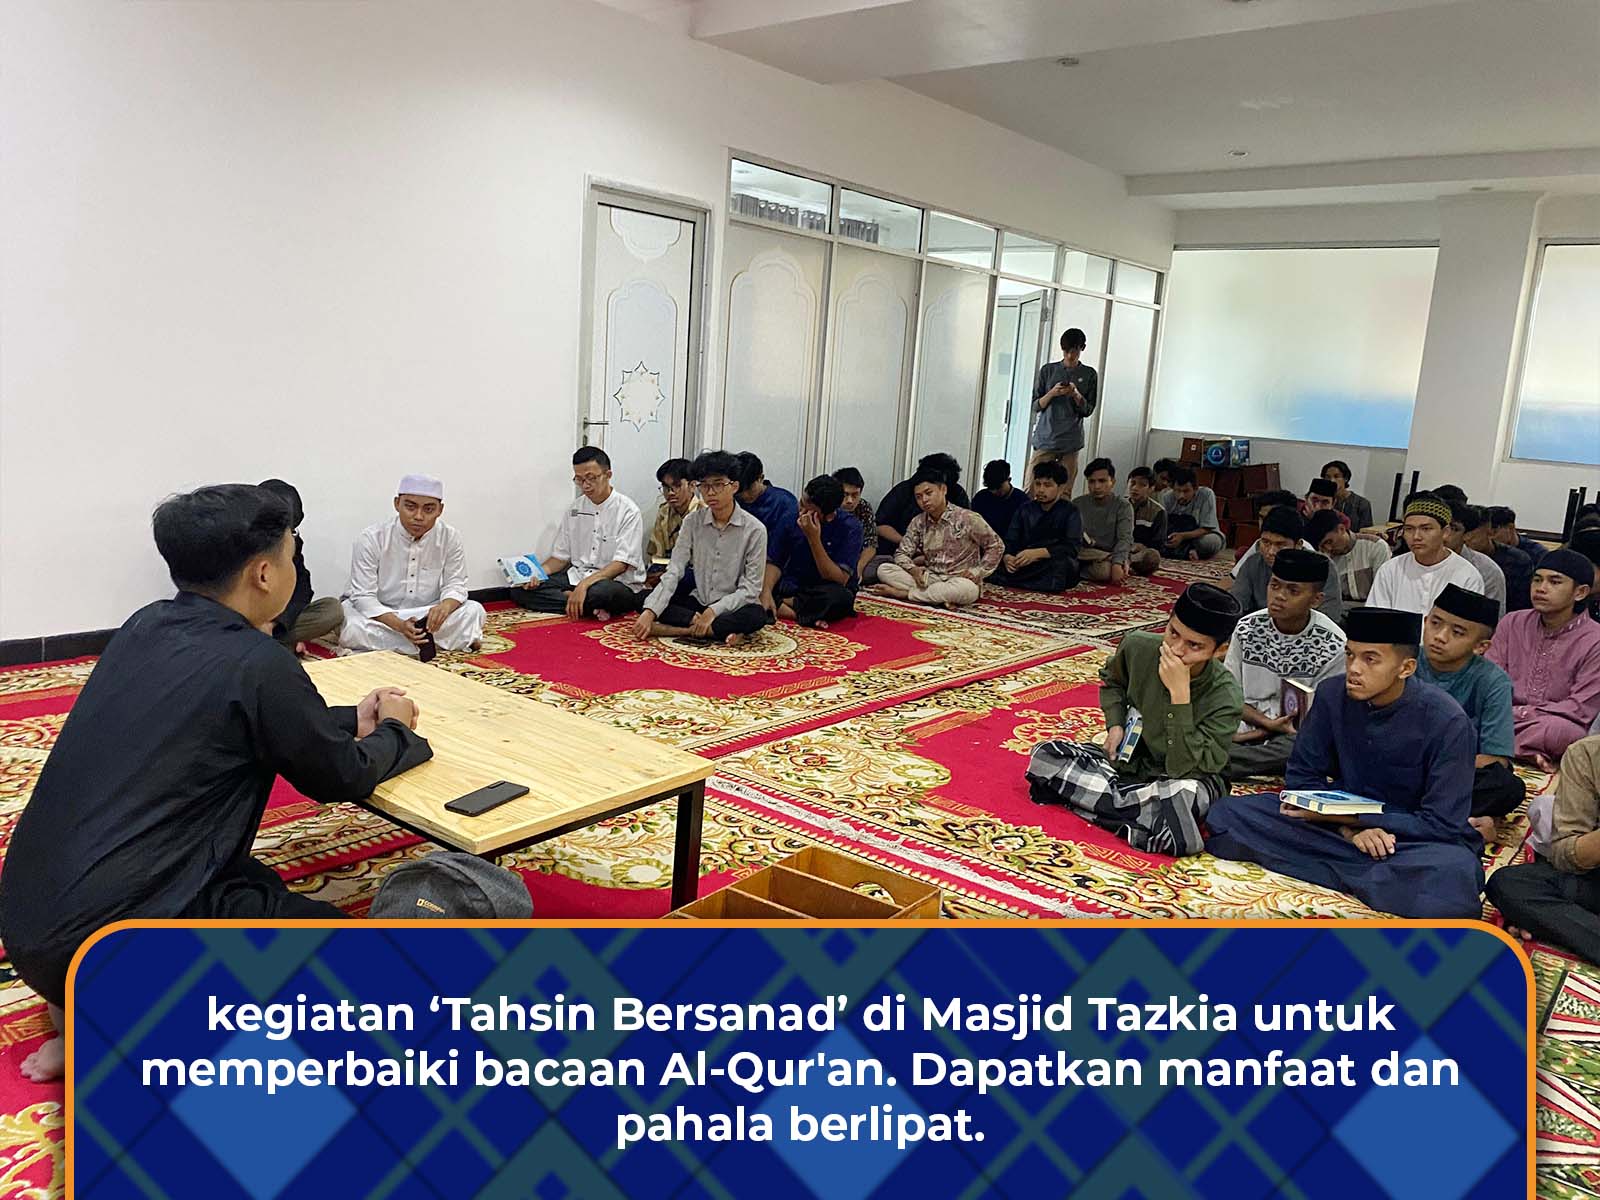 Kegiatan Tahsin Bersanad untuk Menyempurnakan Bacaan Al-Qur'an di Masjid Tazkia